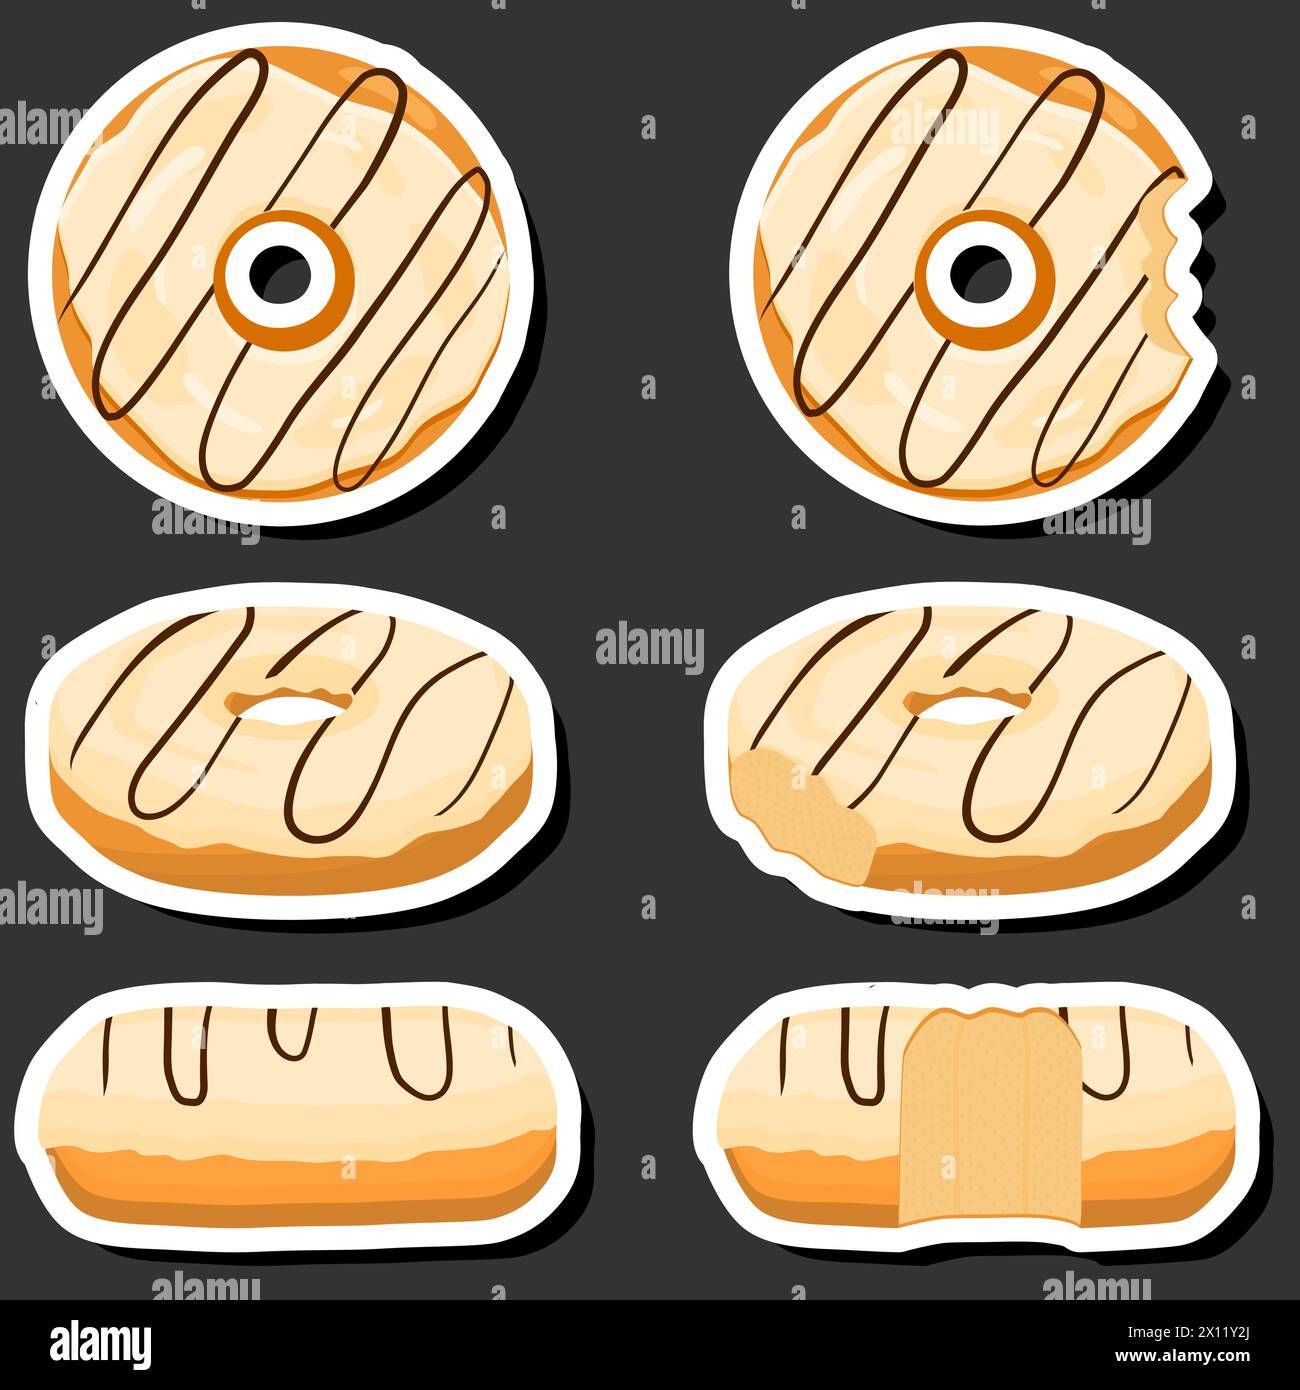 Ilustración sobre tema conjunto grande diferentes tipos de donuts pegajosos, donuts dulces de varios tamaños, patrón de donuts que consiste en la colección de donuts orgánicos fr Ilustración del Vector